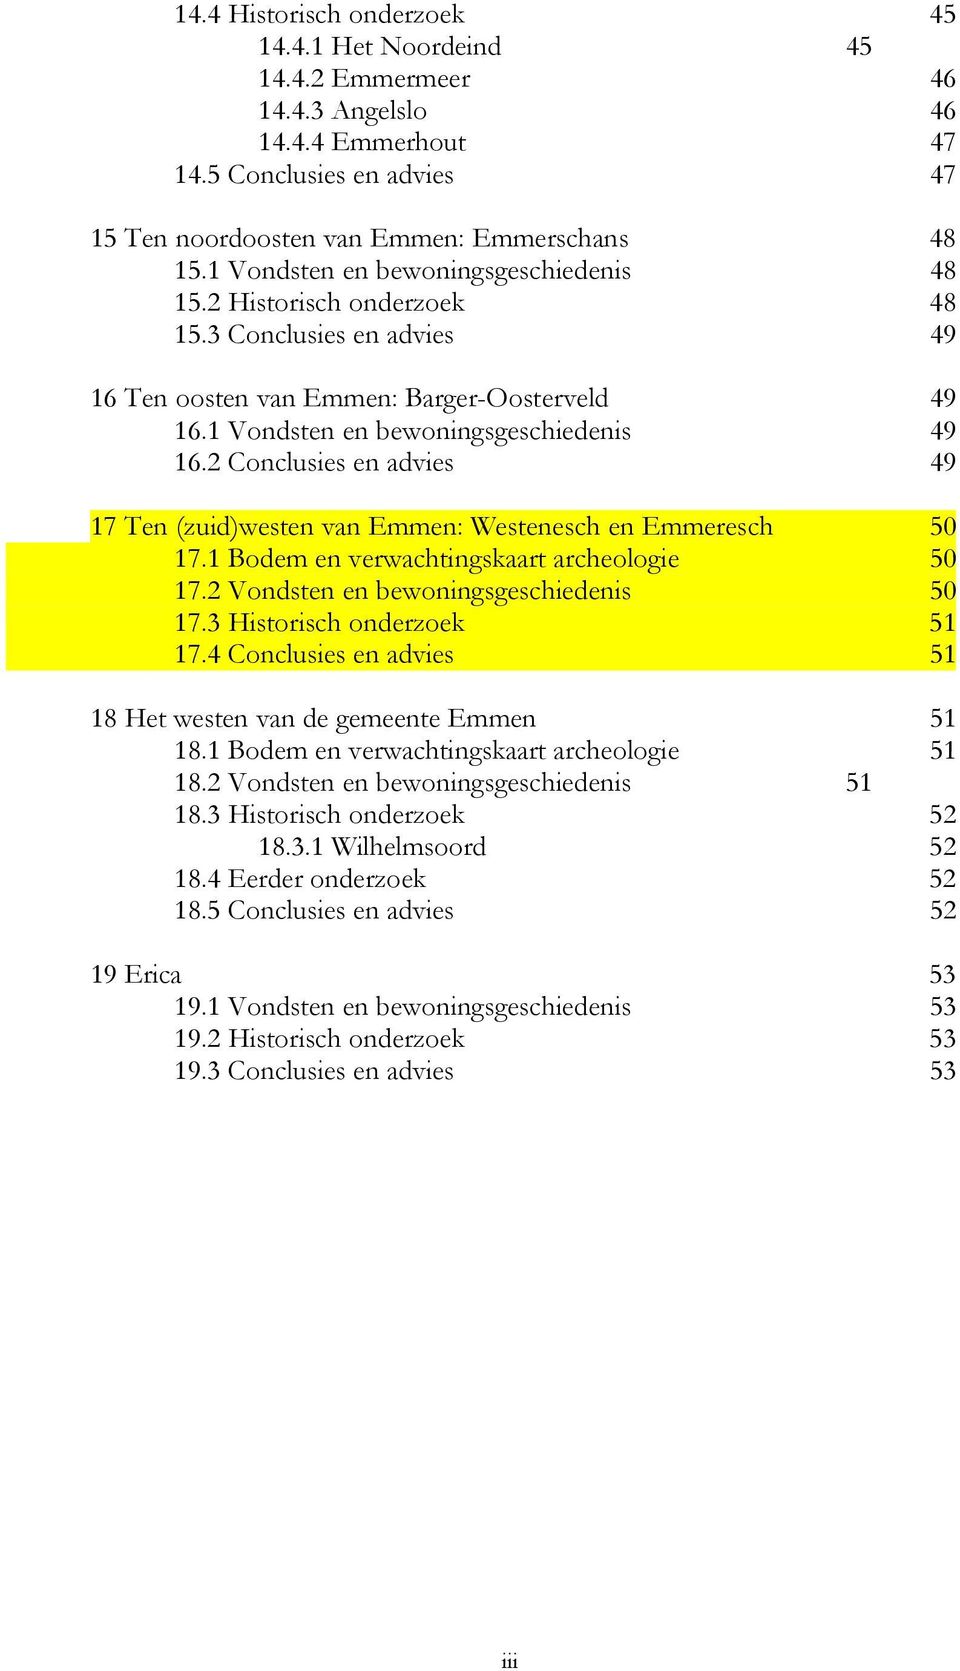 2 Conclusies en advies 49 17 Ten (zuid)westen van Emmen: Westenesch en Emmeresch 50 17.1 Bodem en verwachtingskaart archeologie 50 17.2 Vondsten en bewoningsgeschiedenis 50 17.